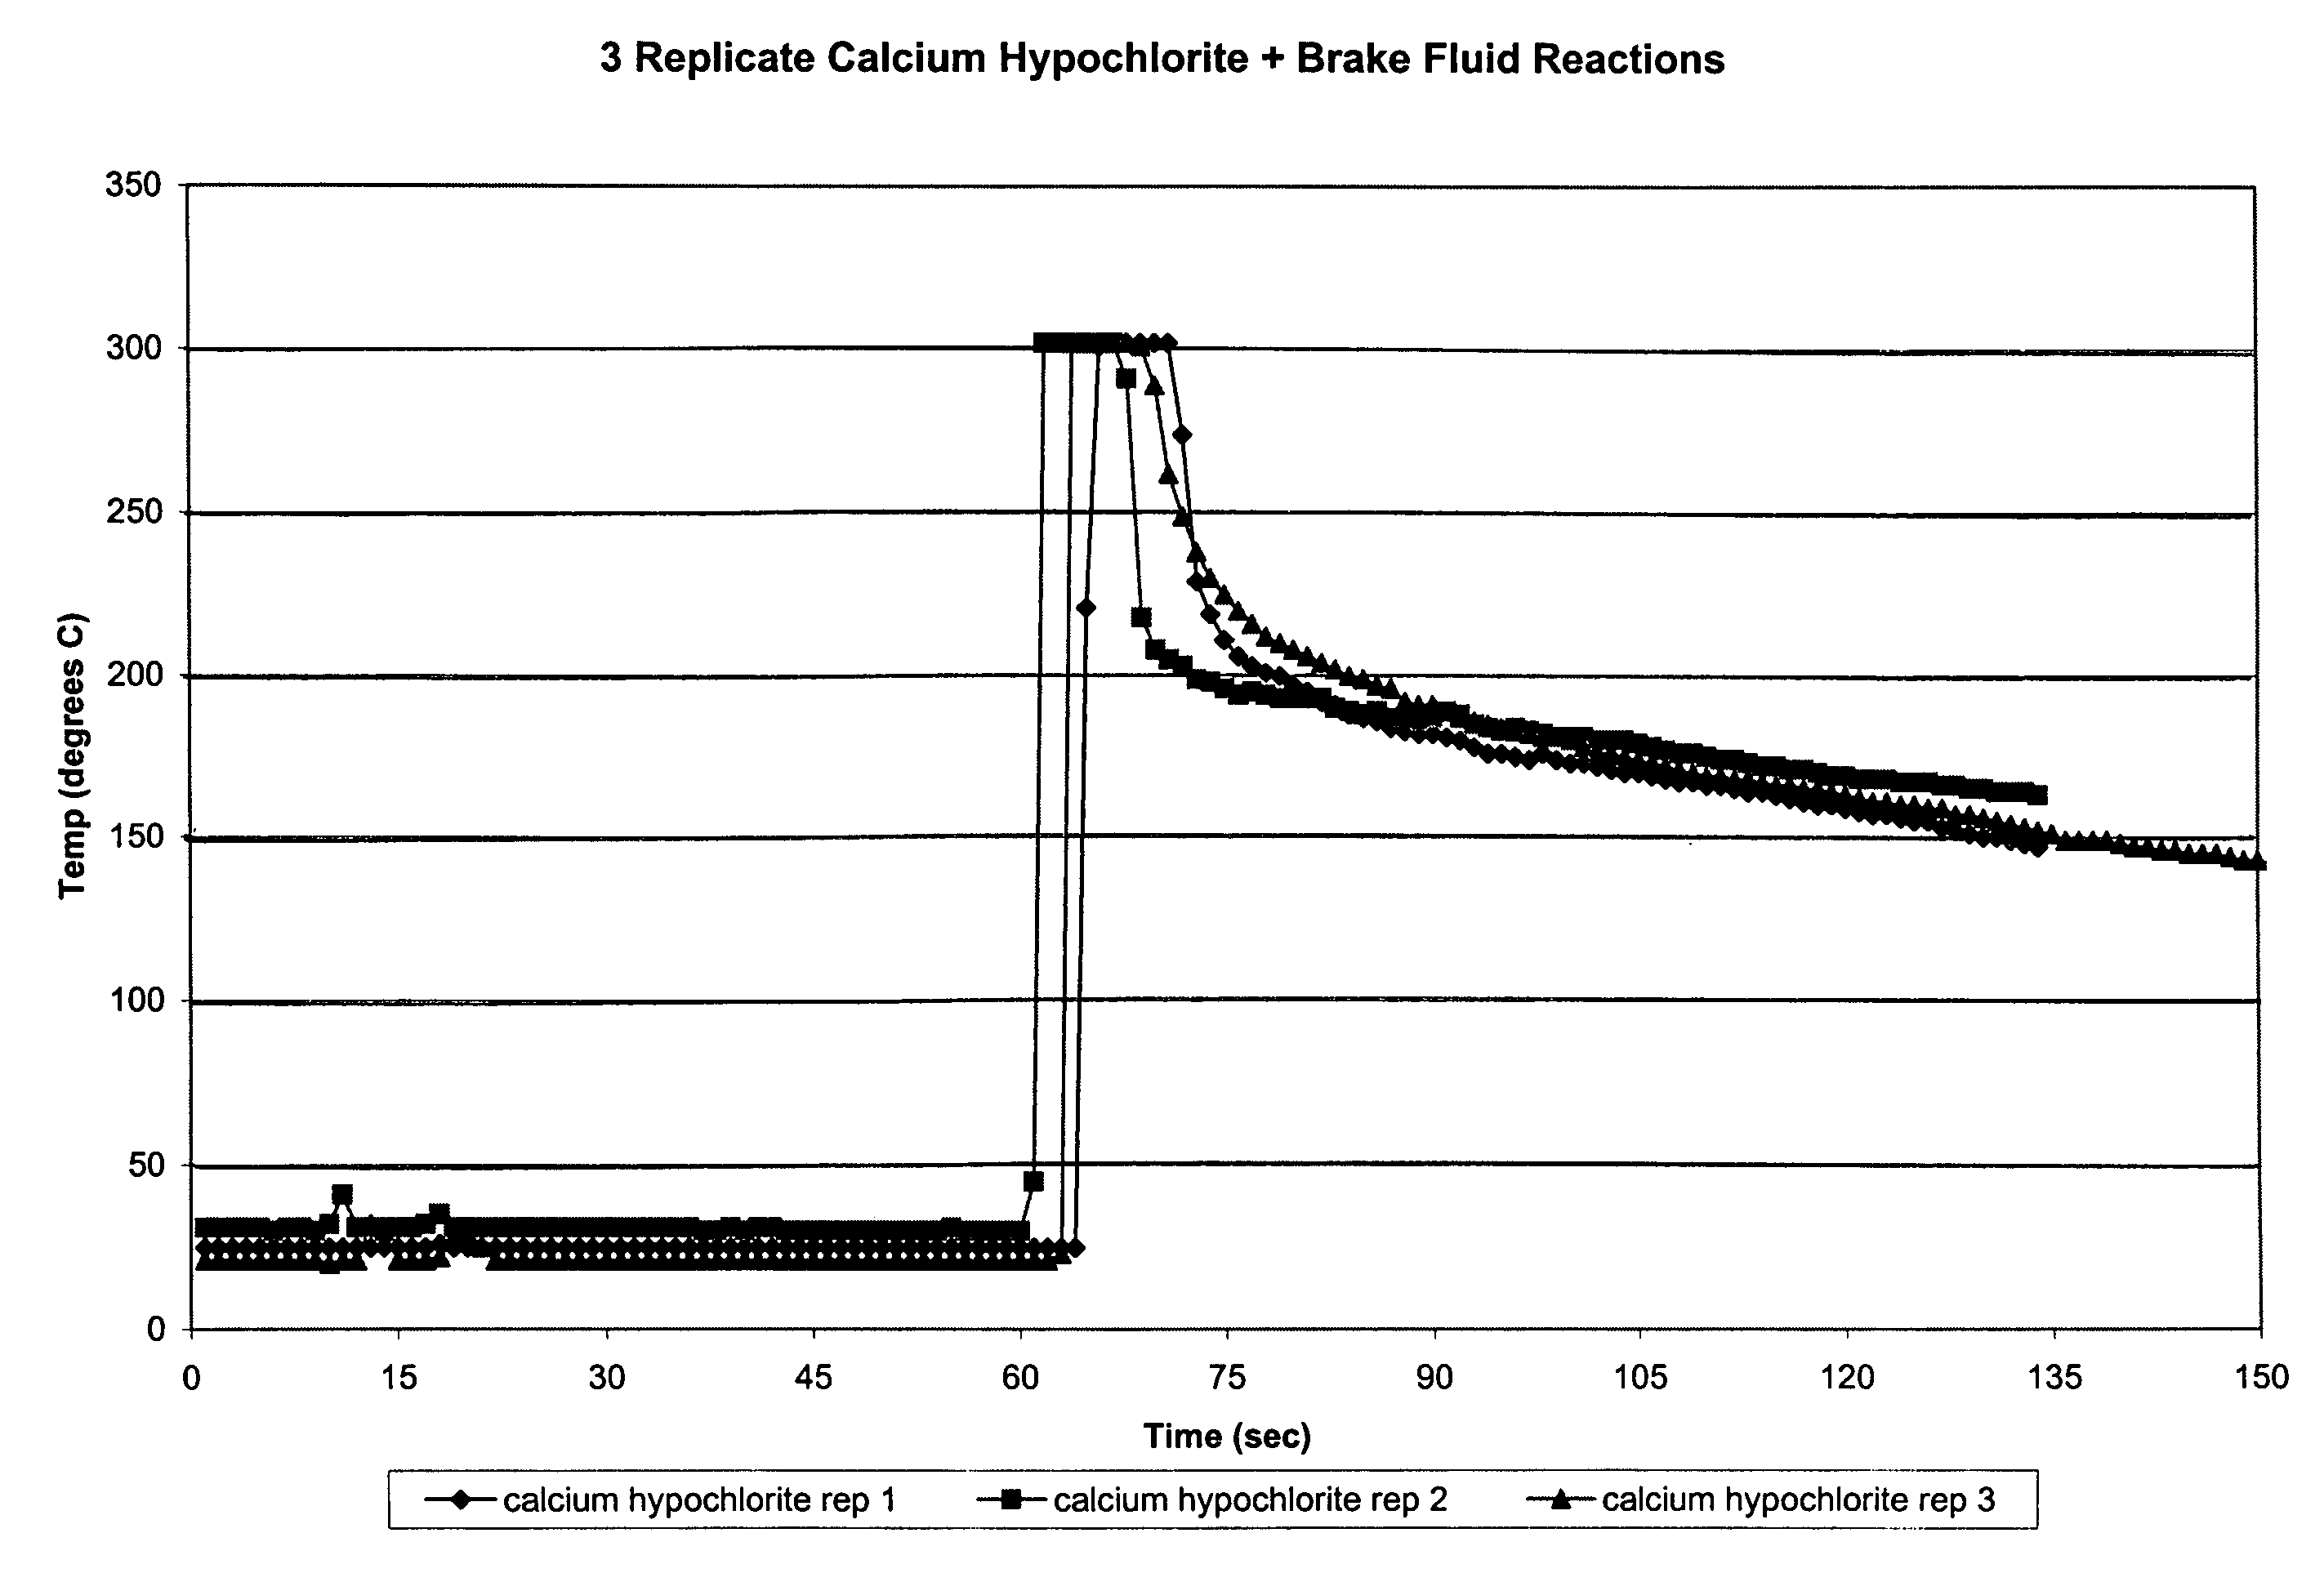 Calcium hypochlorite compositions